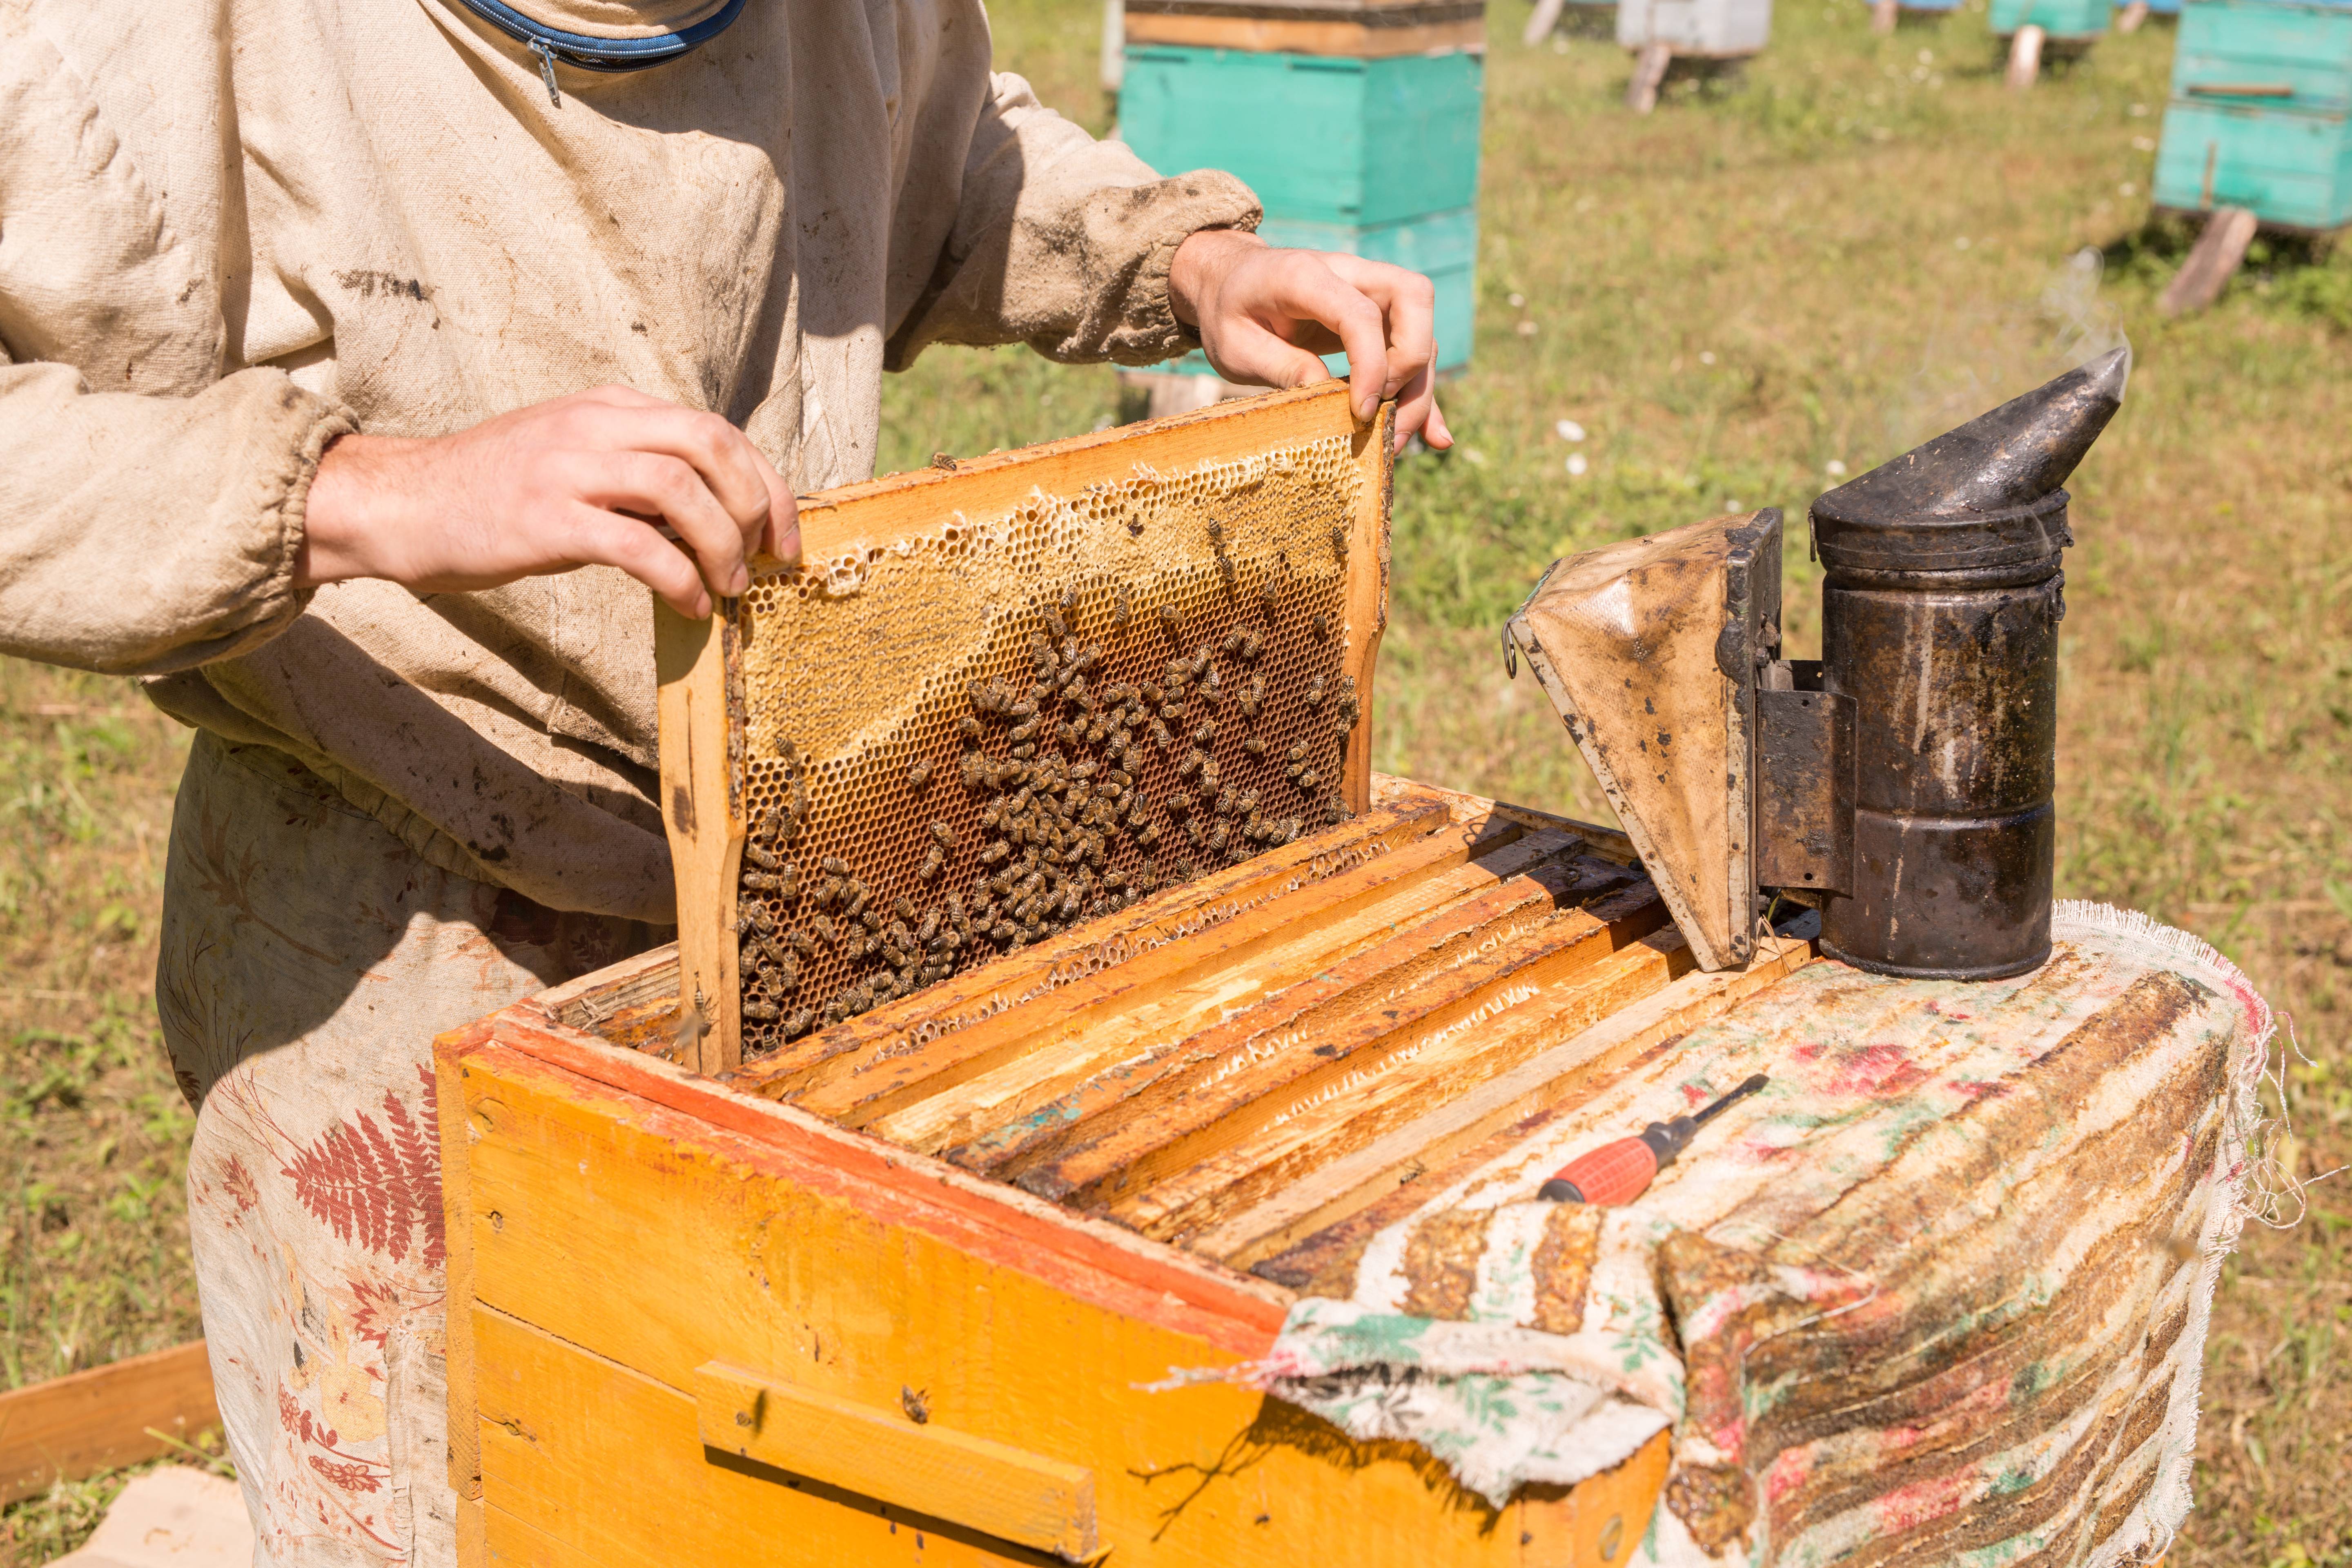 Развитие пчеловодческих хозяйств на урале